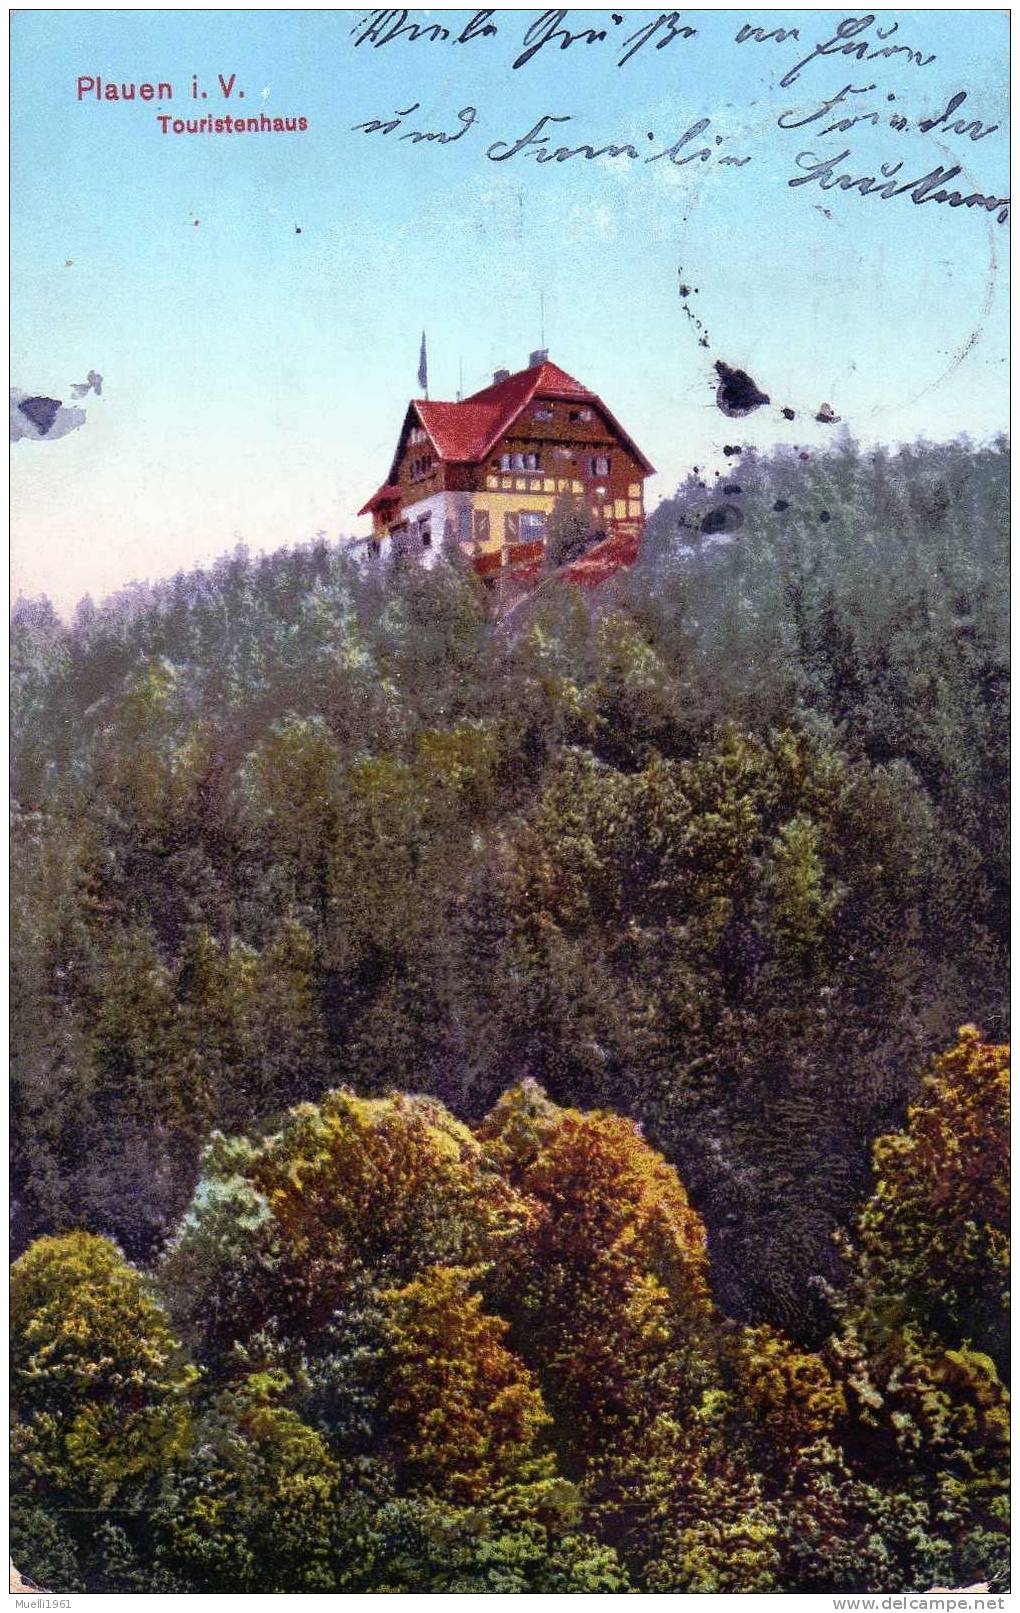 Plauen, Touristenhaus, 1915 - Plauen